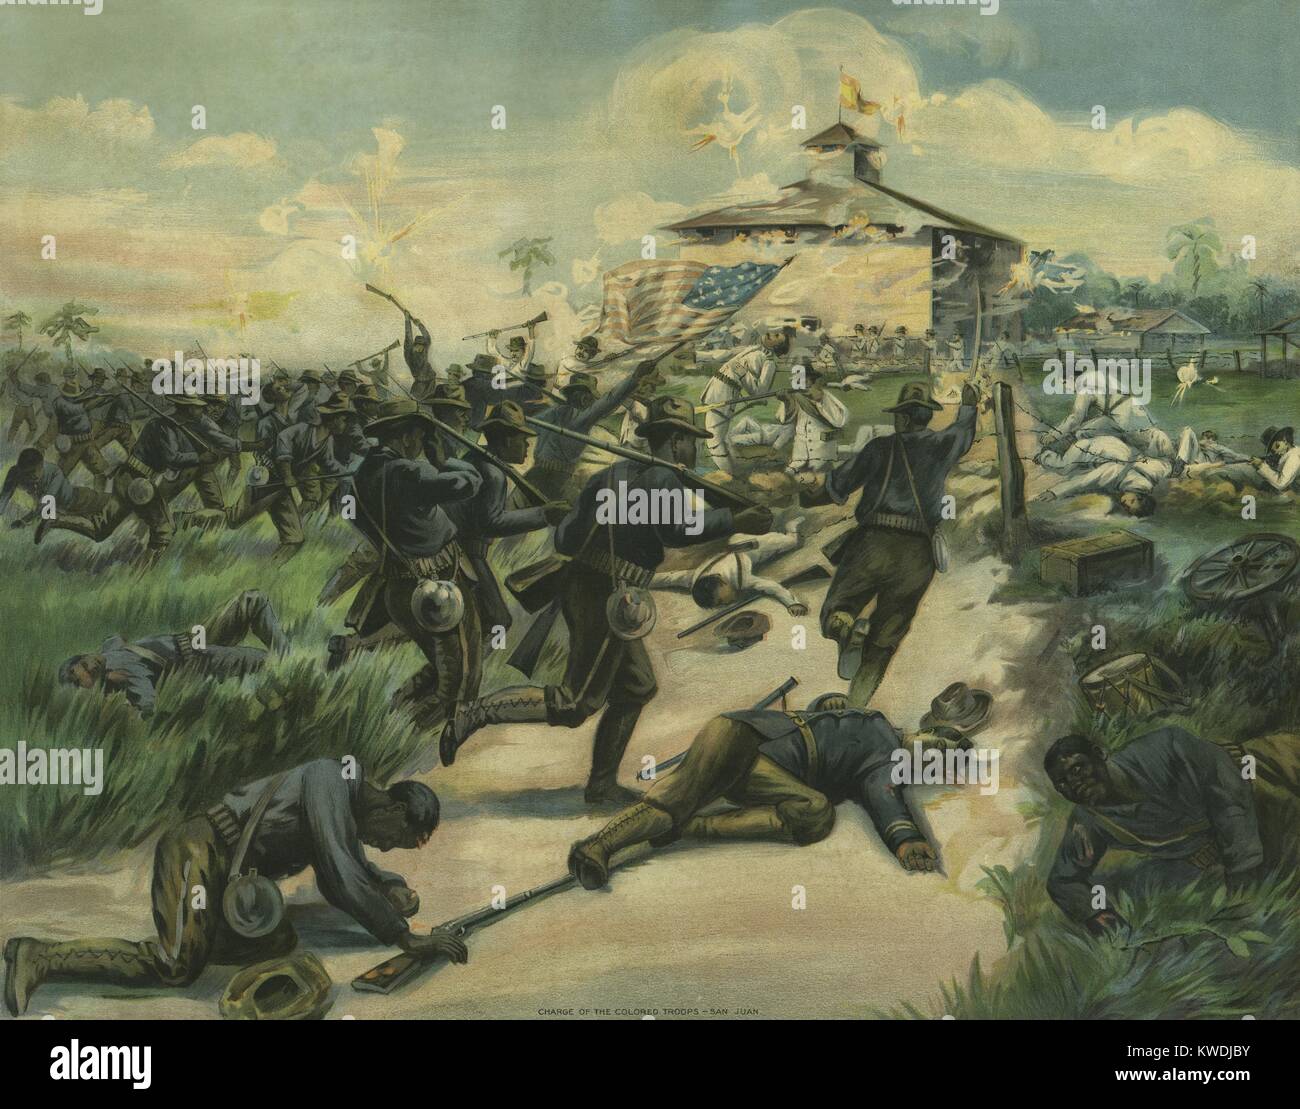 Les Africains américains de la 9e et 10e régiments de cavalerie au cours de la Bataille de San Juan Hill. Ils ont accusé le block house à San Juan Heights, 1 juillet 1898, au cours de la guerre hispano-américaine à Cuba (BSLOC   2017 10 35) Banque D'Images